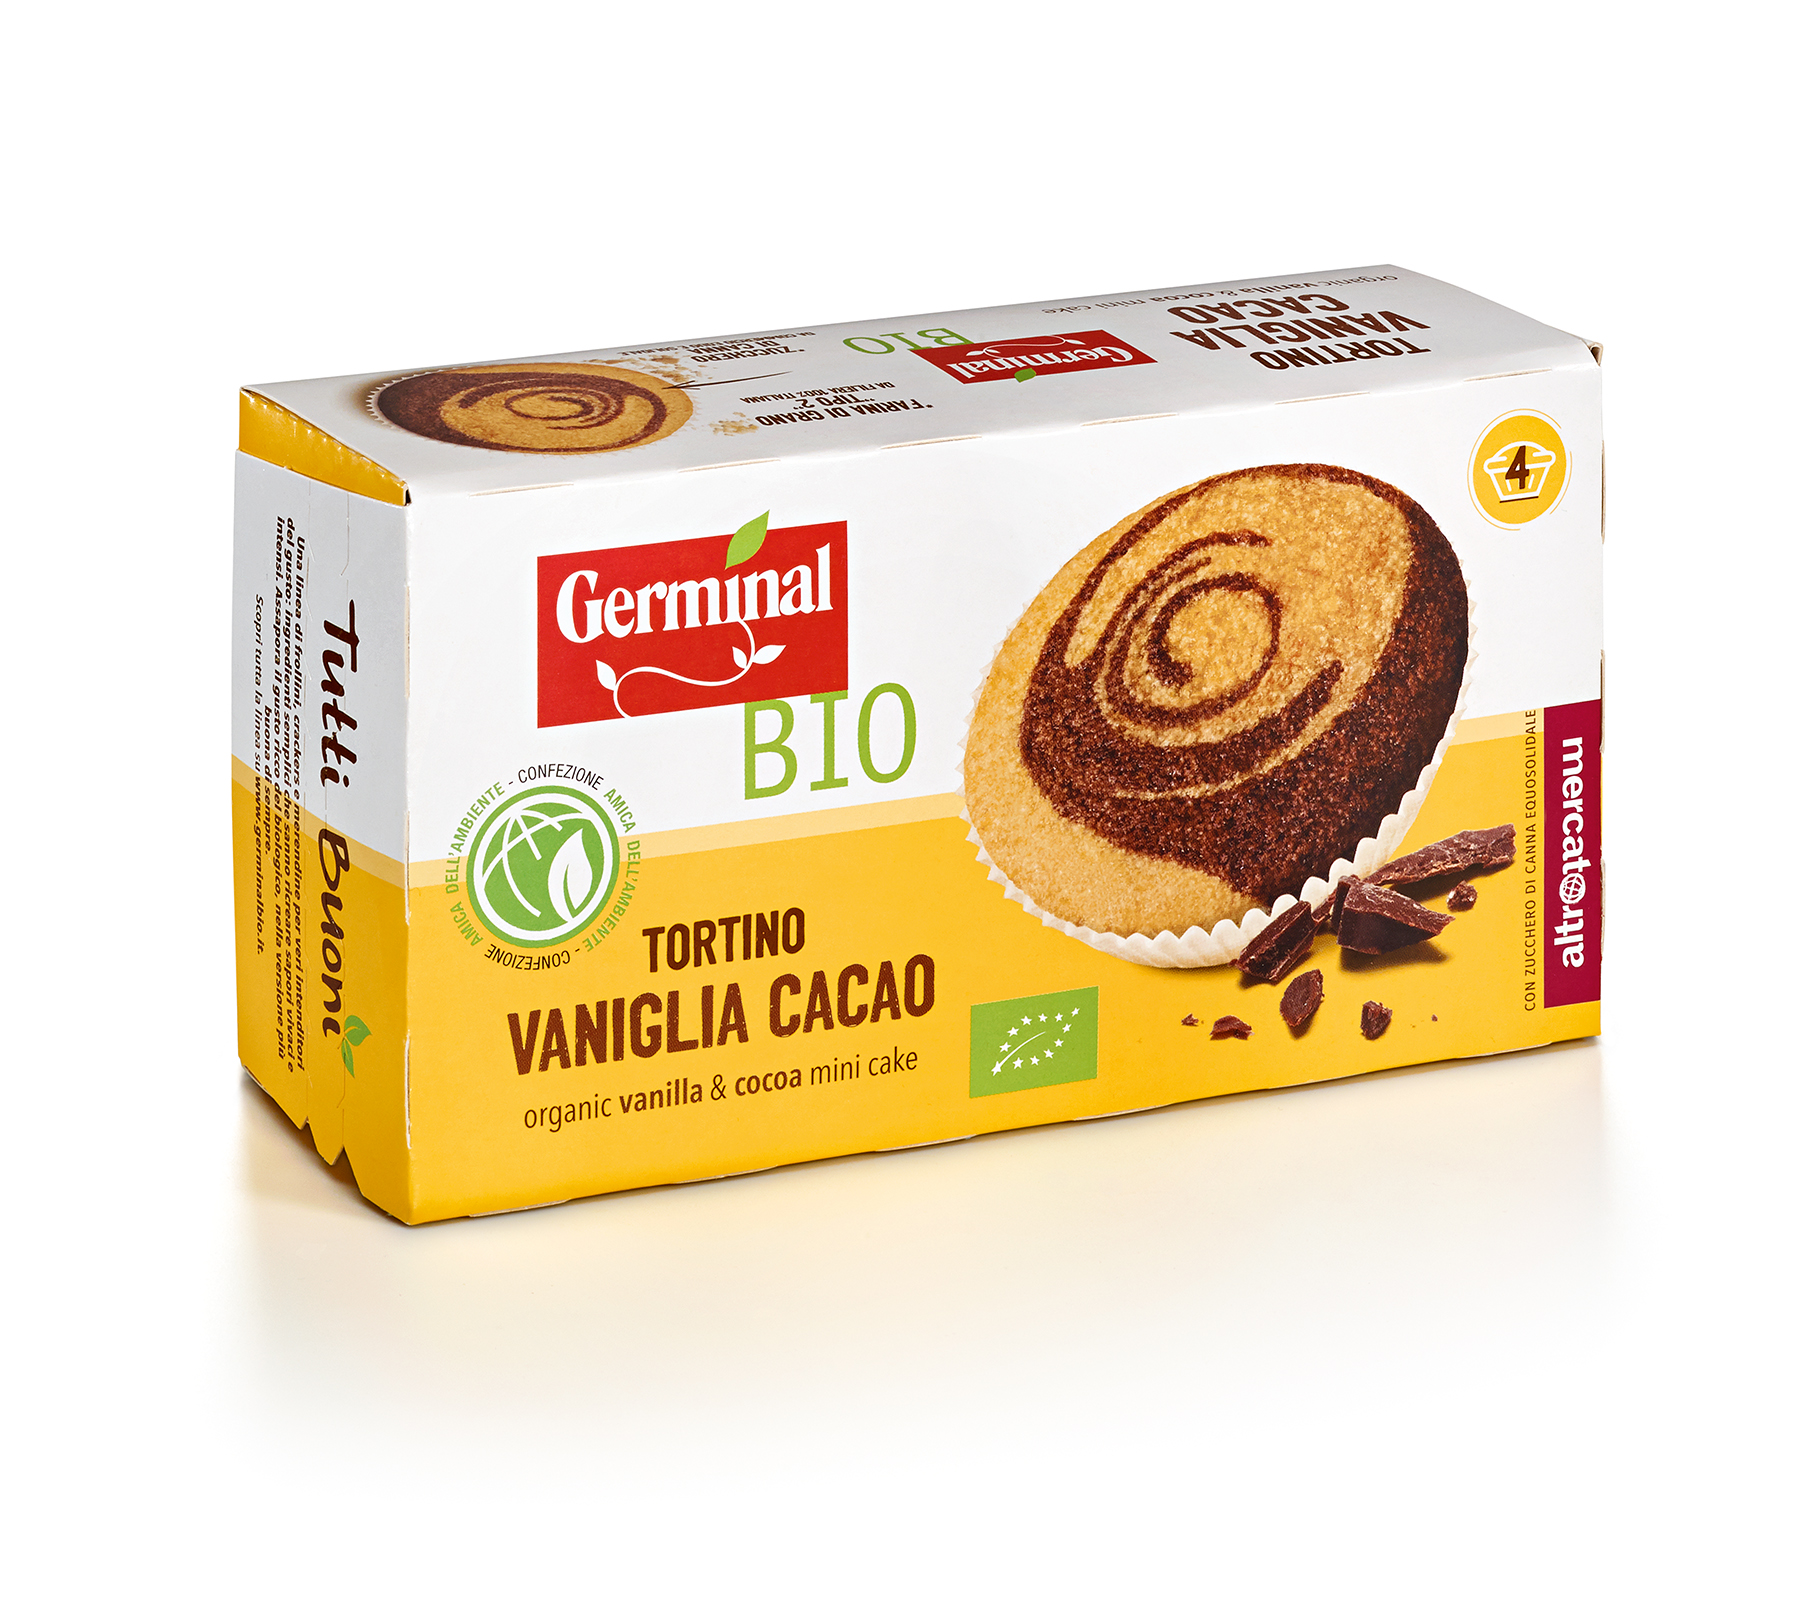 Immagine confezione Tortino Vaniglia Cacao Germinal Bio